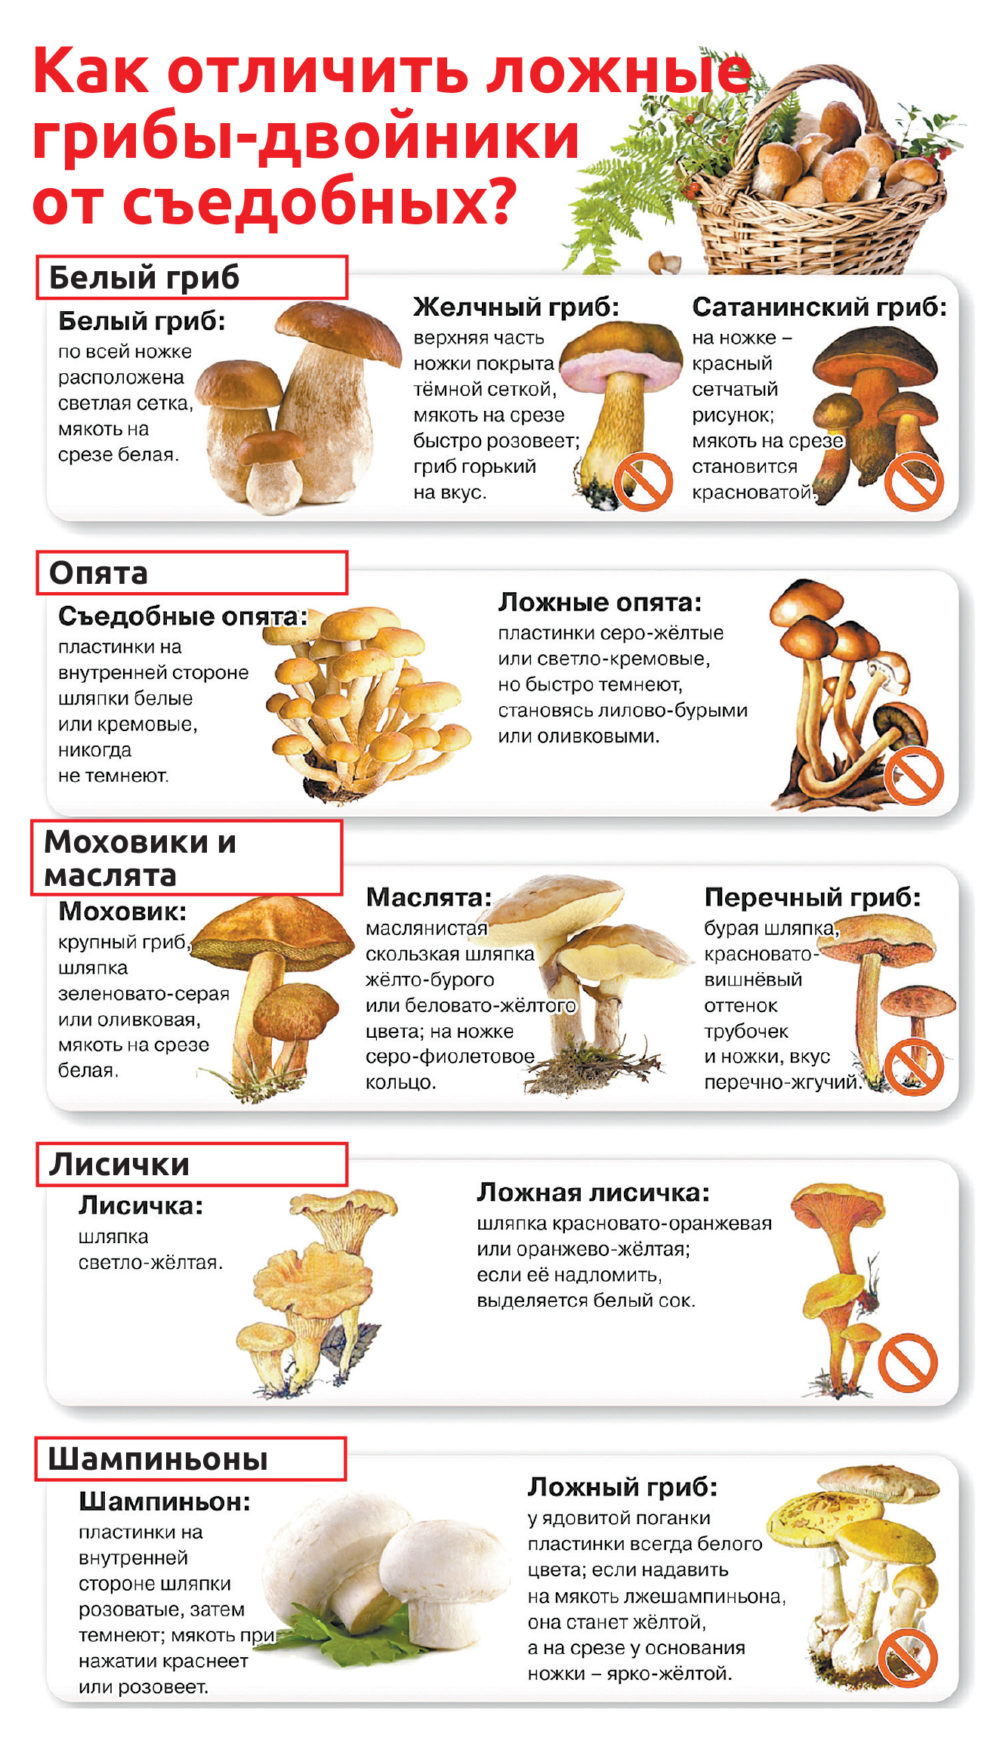 список июльских съедобных грибов + фото 1